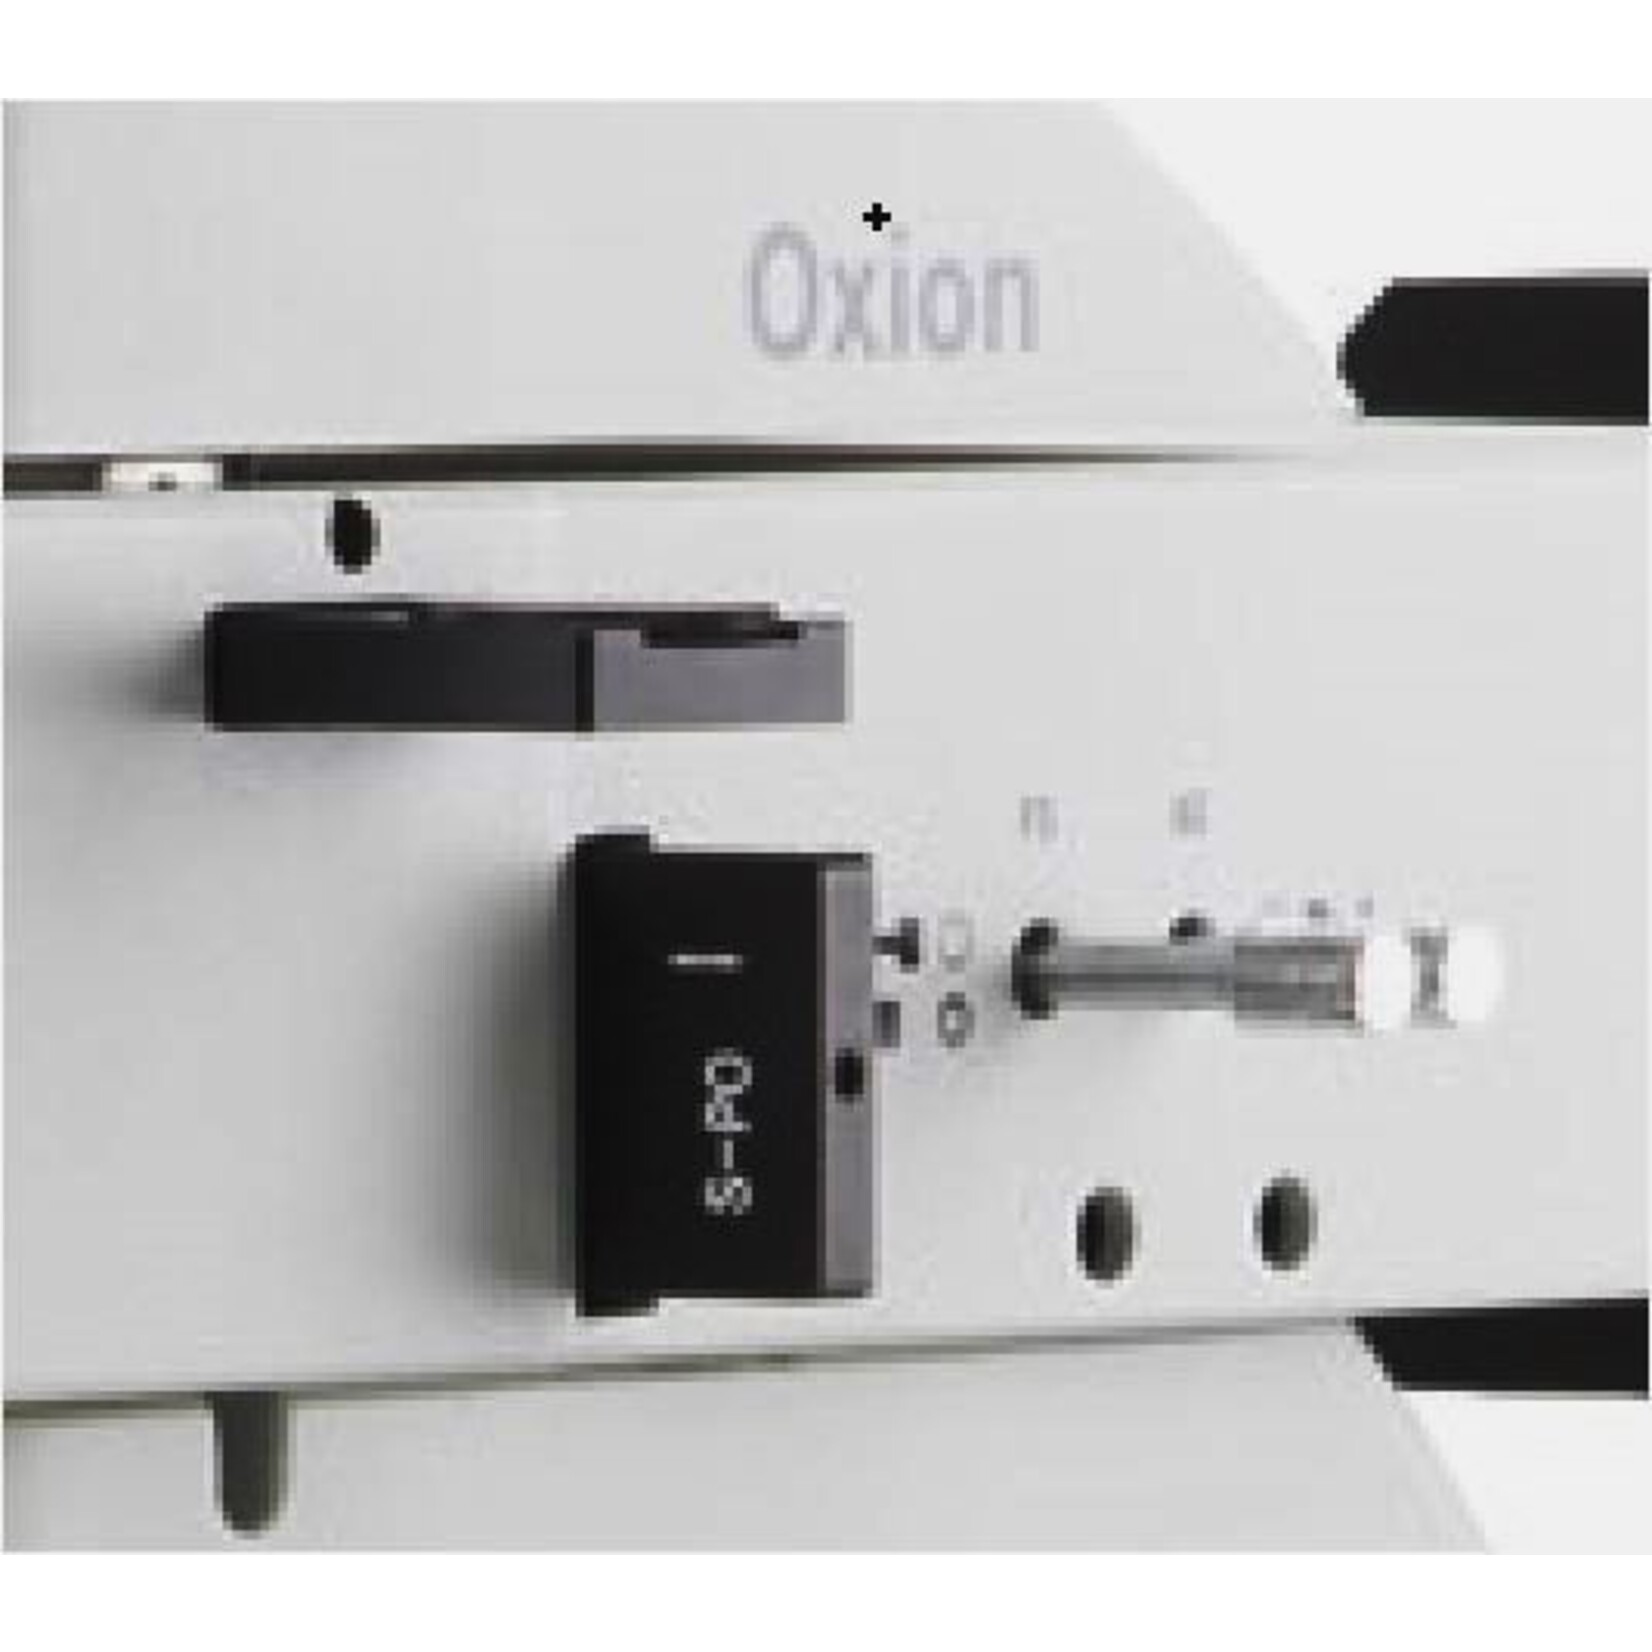 Microscope industriel Oxion pour l'imagerie de rectification